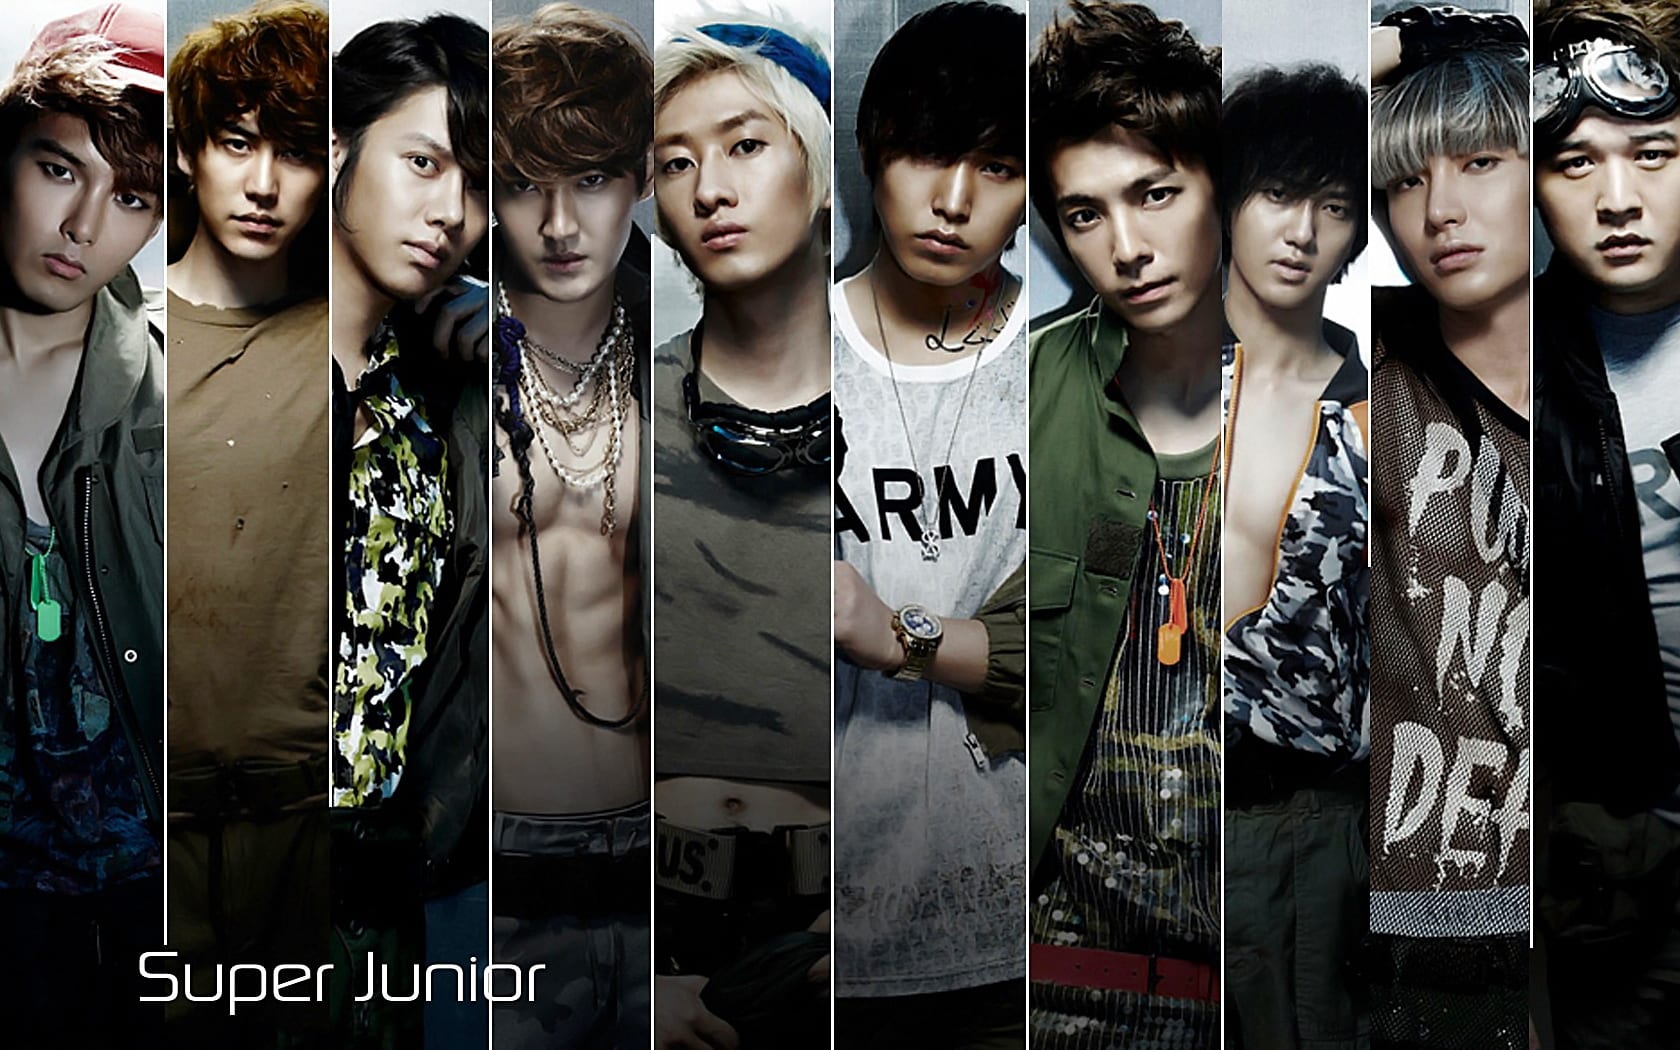 Nhóm nhạc nam Super Junior của Công ty giải trí SM